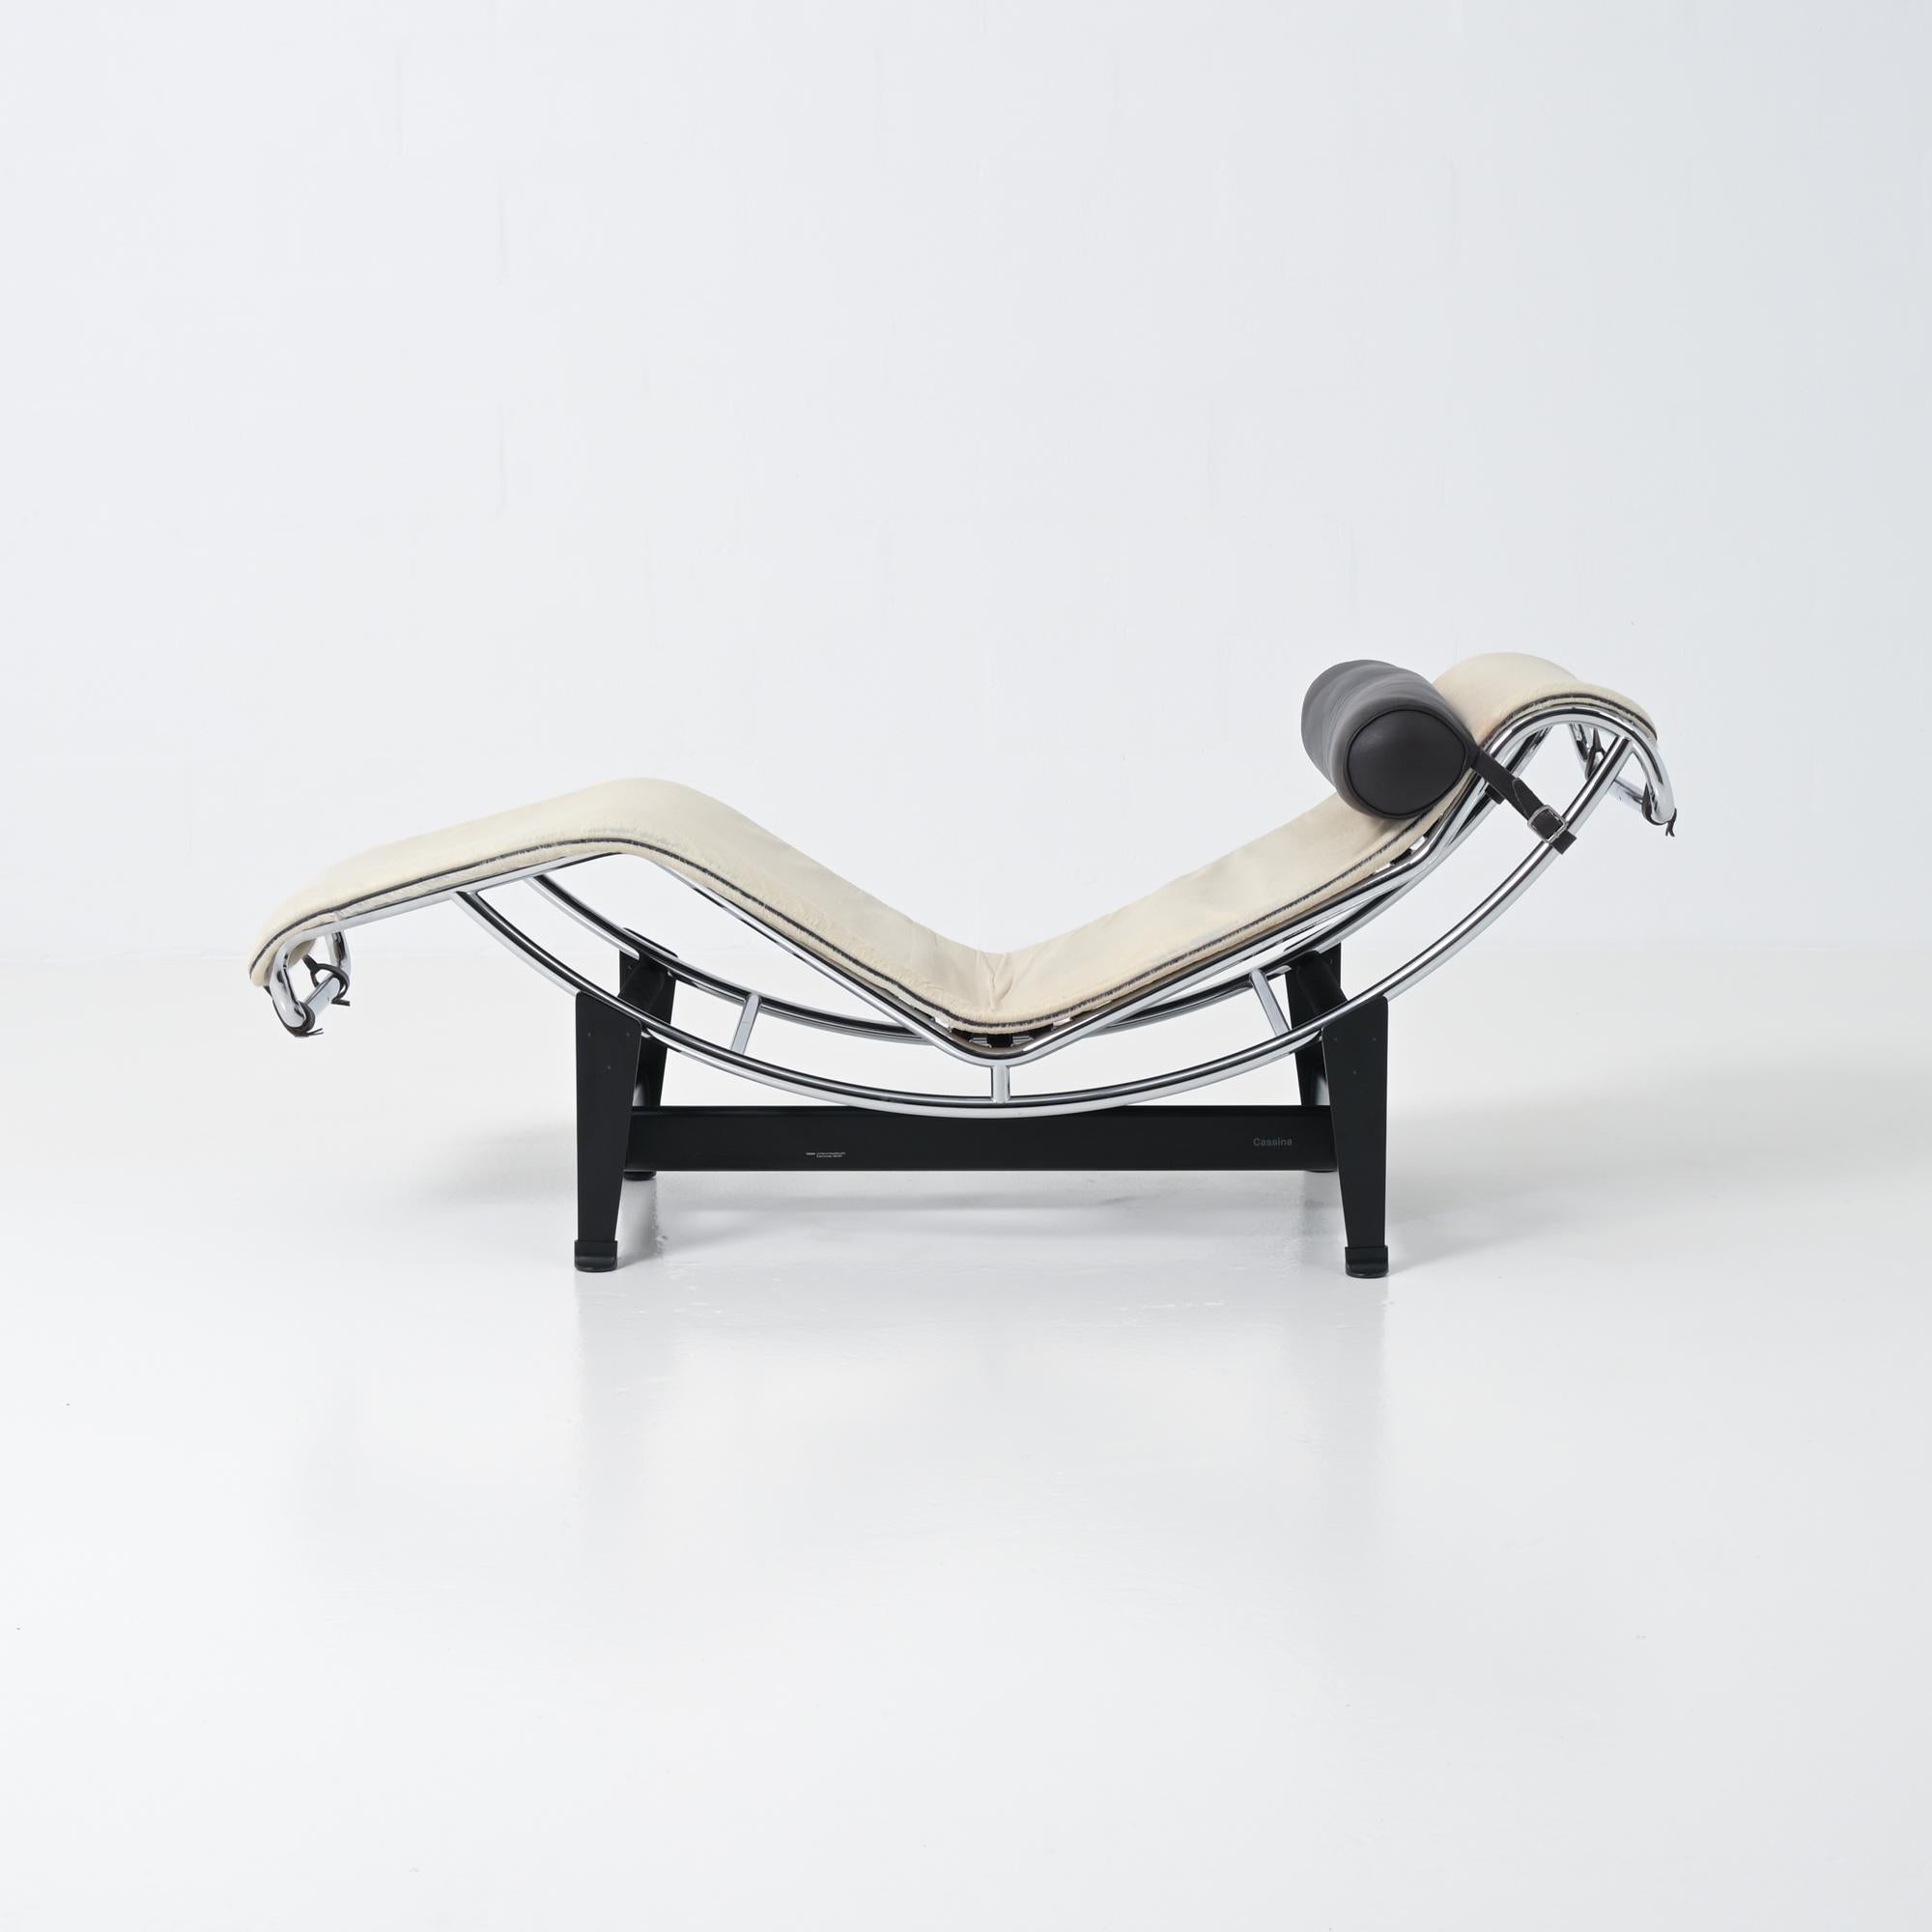 La chaise longue LC4 a été conçue par Le Corbusier, Pierre Jeanneret et Charlotte pour le Salon d'Automne à Paris.
Cette chaise de salon avec une base en acier noir, un cadre tubulaire réglable en métal chromé poli et un appui-tête en cuir noir est